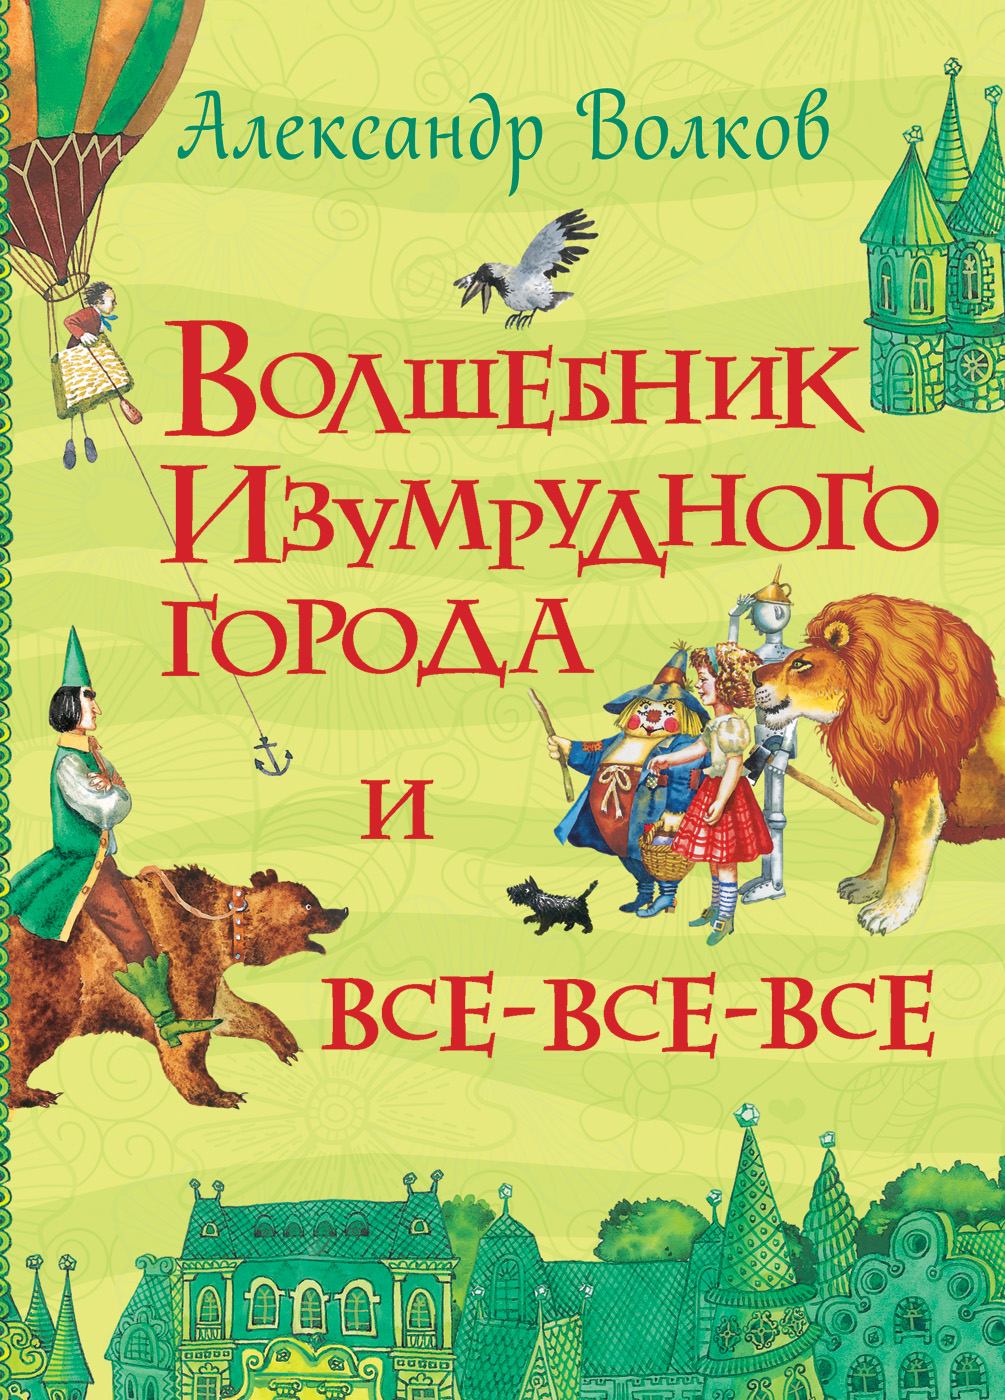 Книга 28489 "Волков А. Волшебник Изумрудного города"  (Все истории) Росмэн - Заинск 